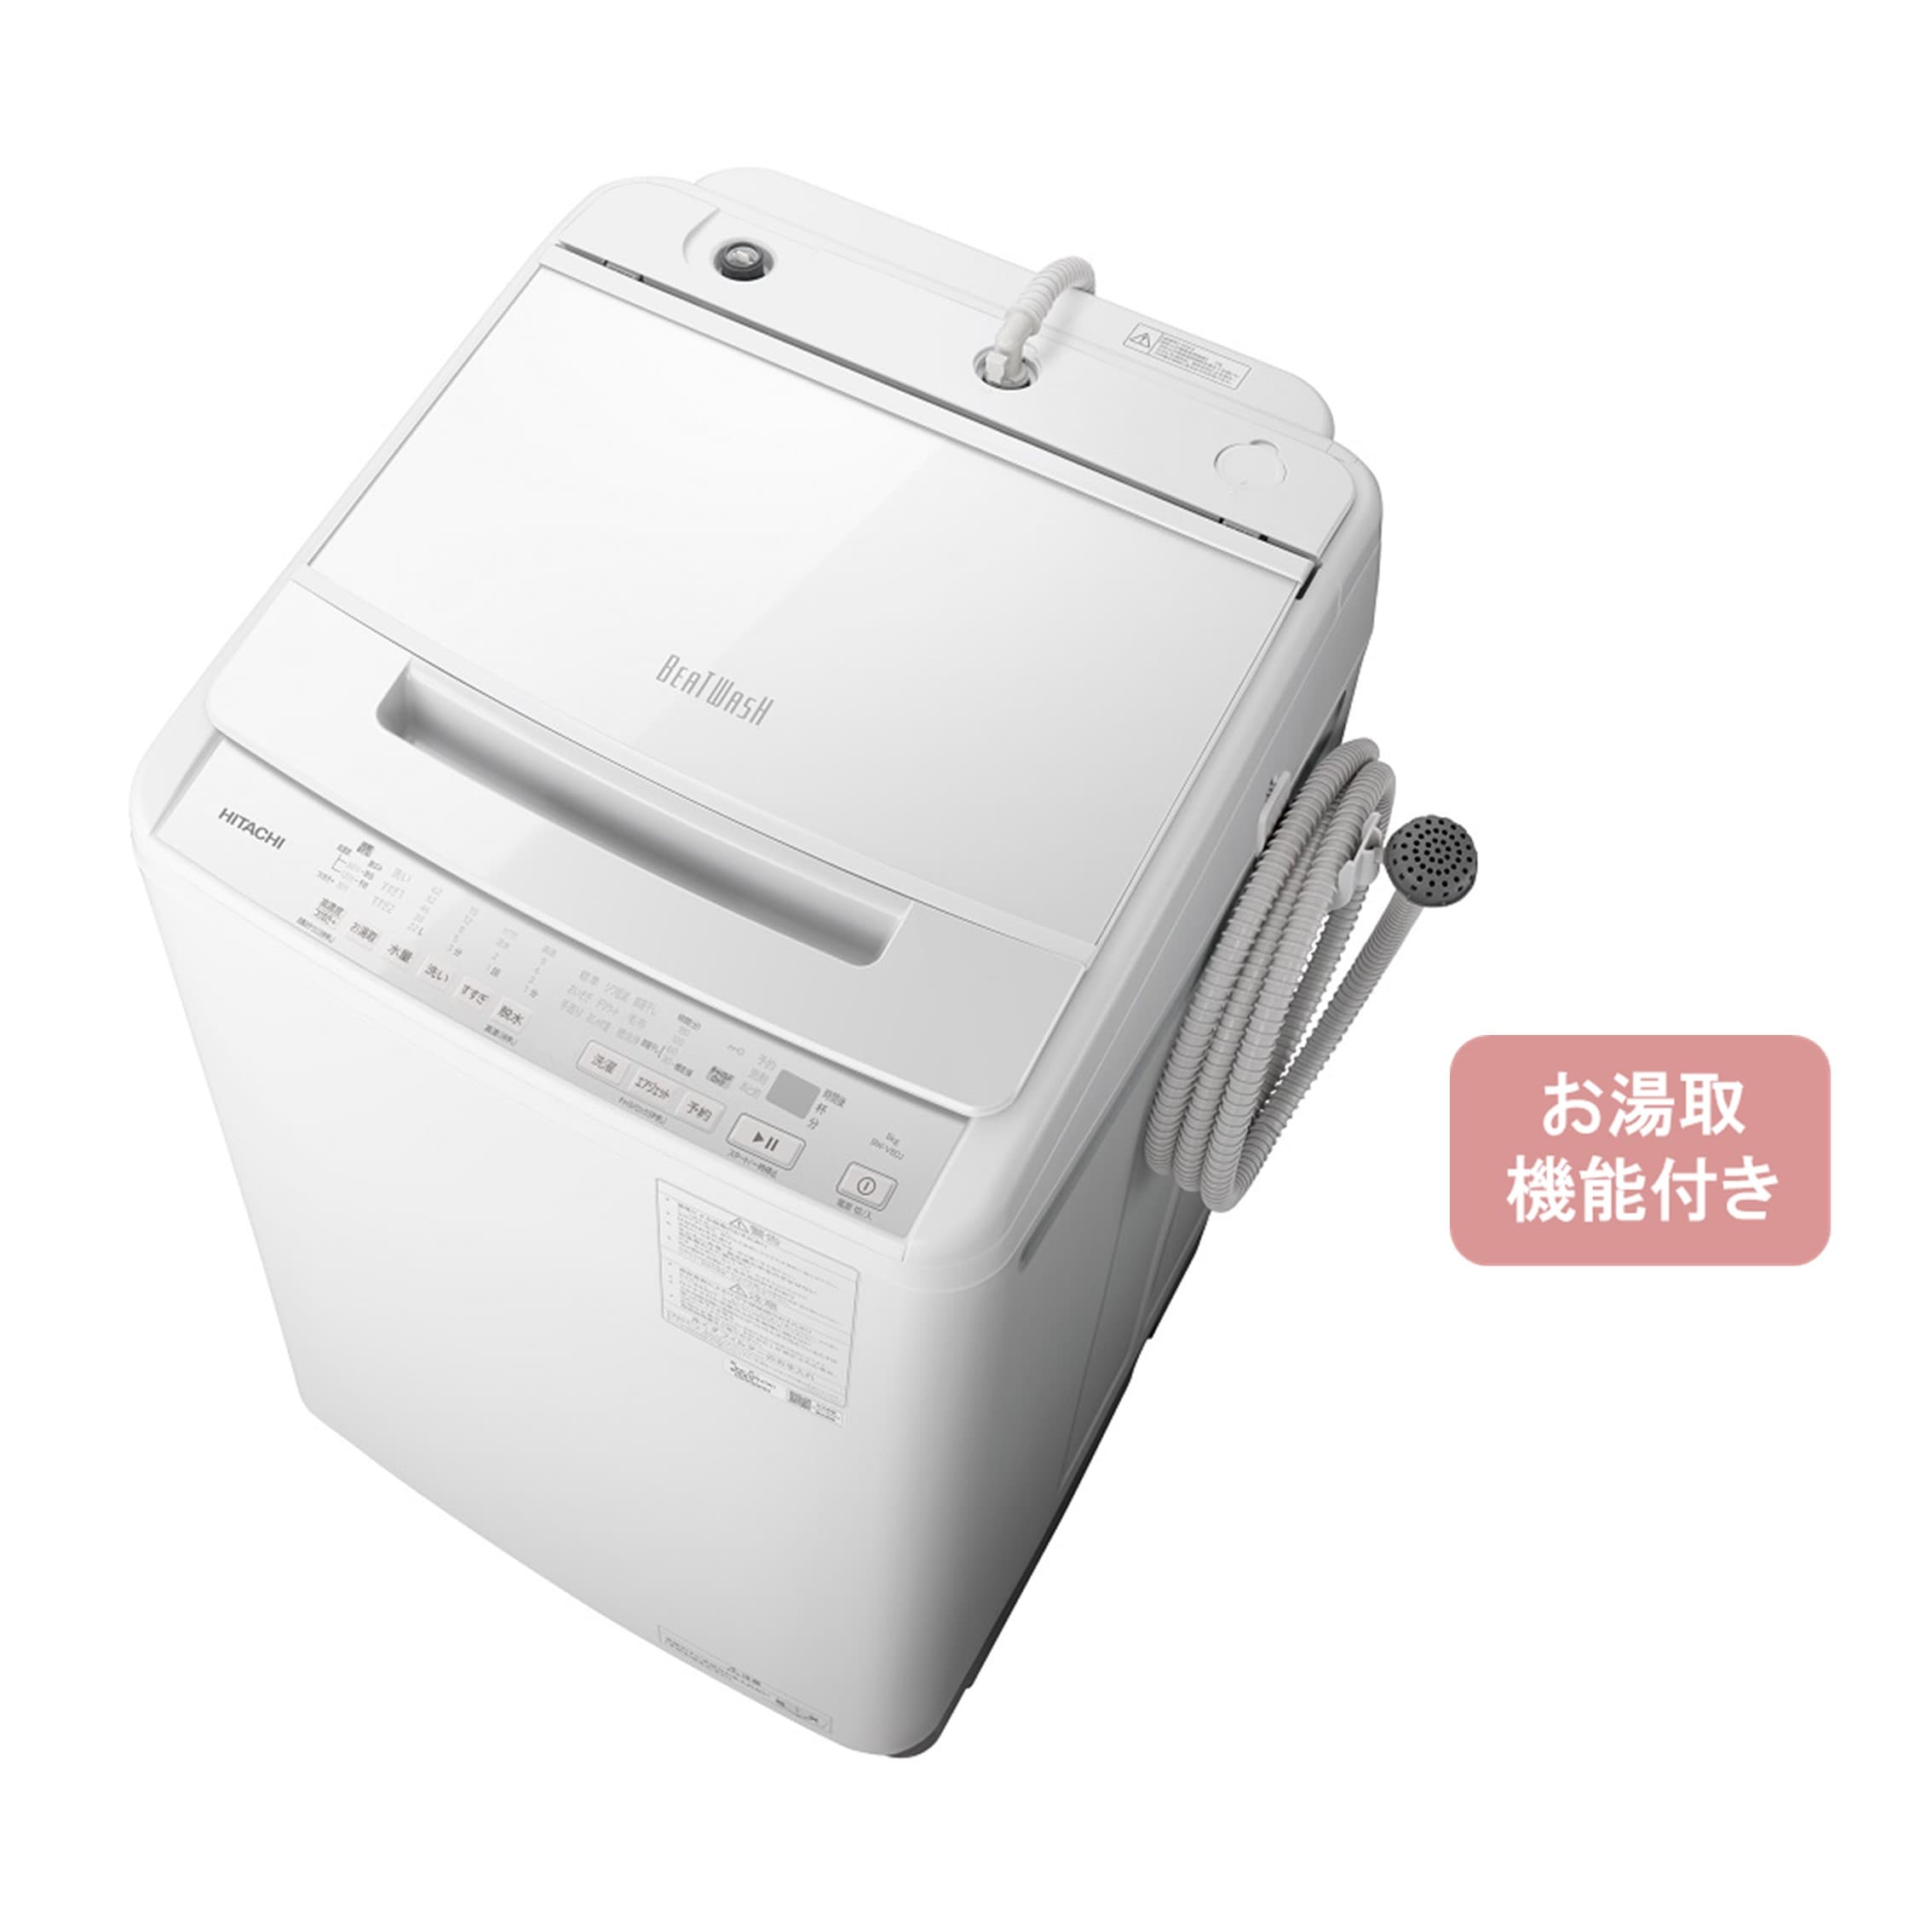 タテ型洗濯機（8kg） BW-V80J W(ホワイト): 生活家電/日立の家電品 